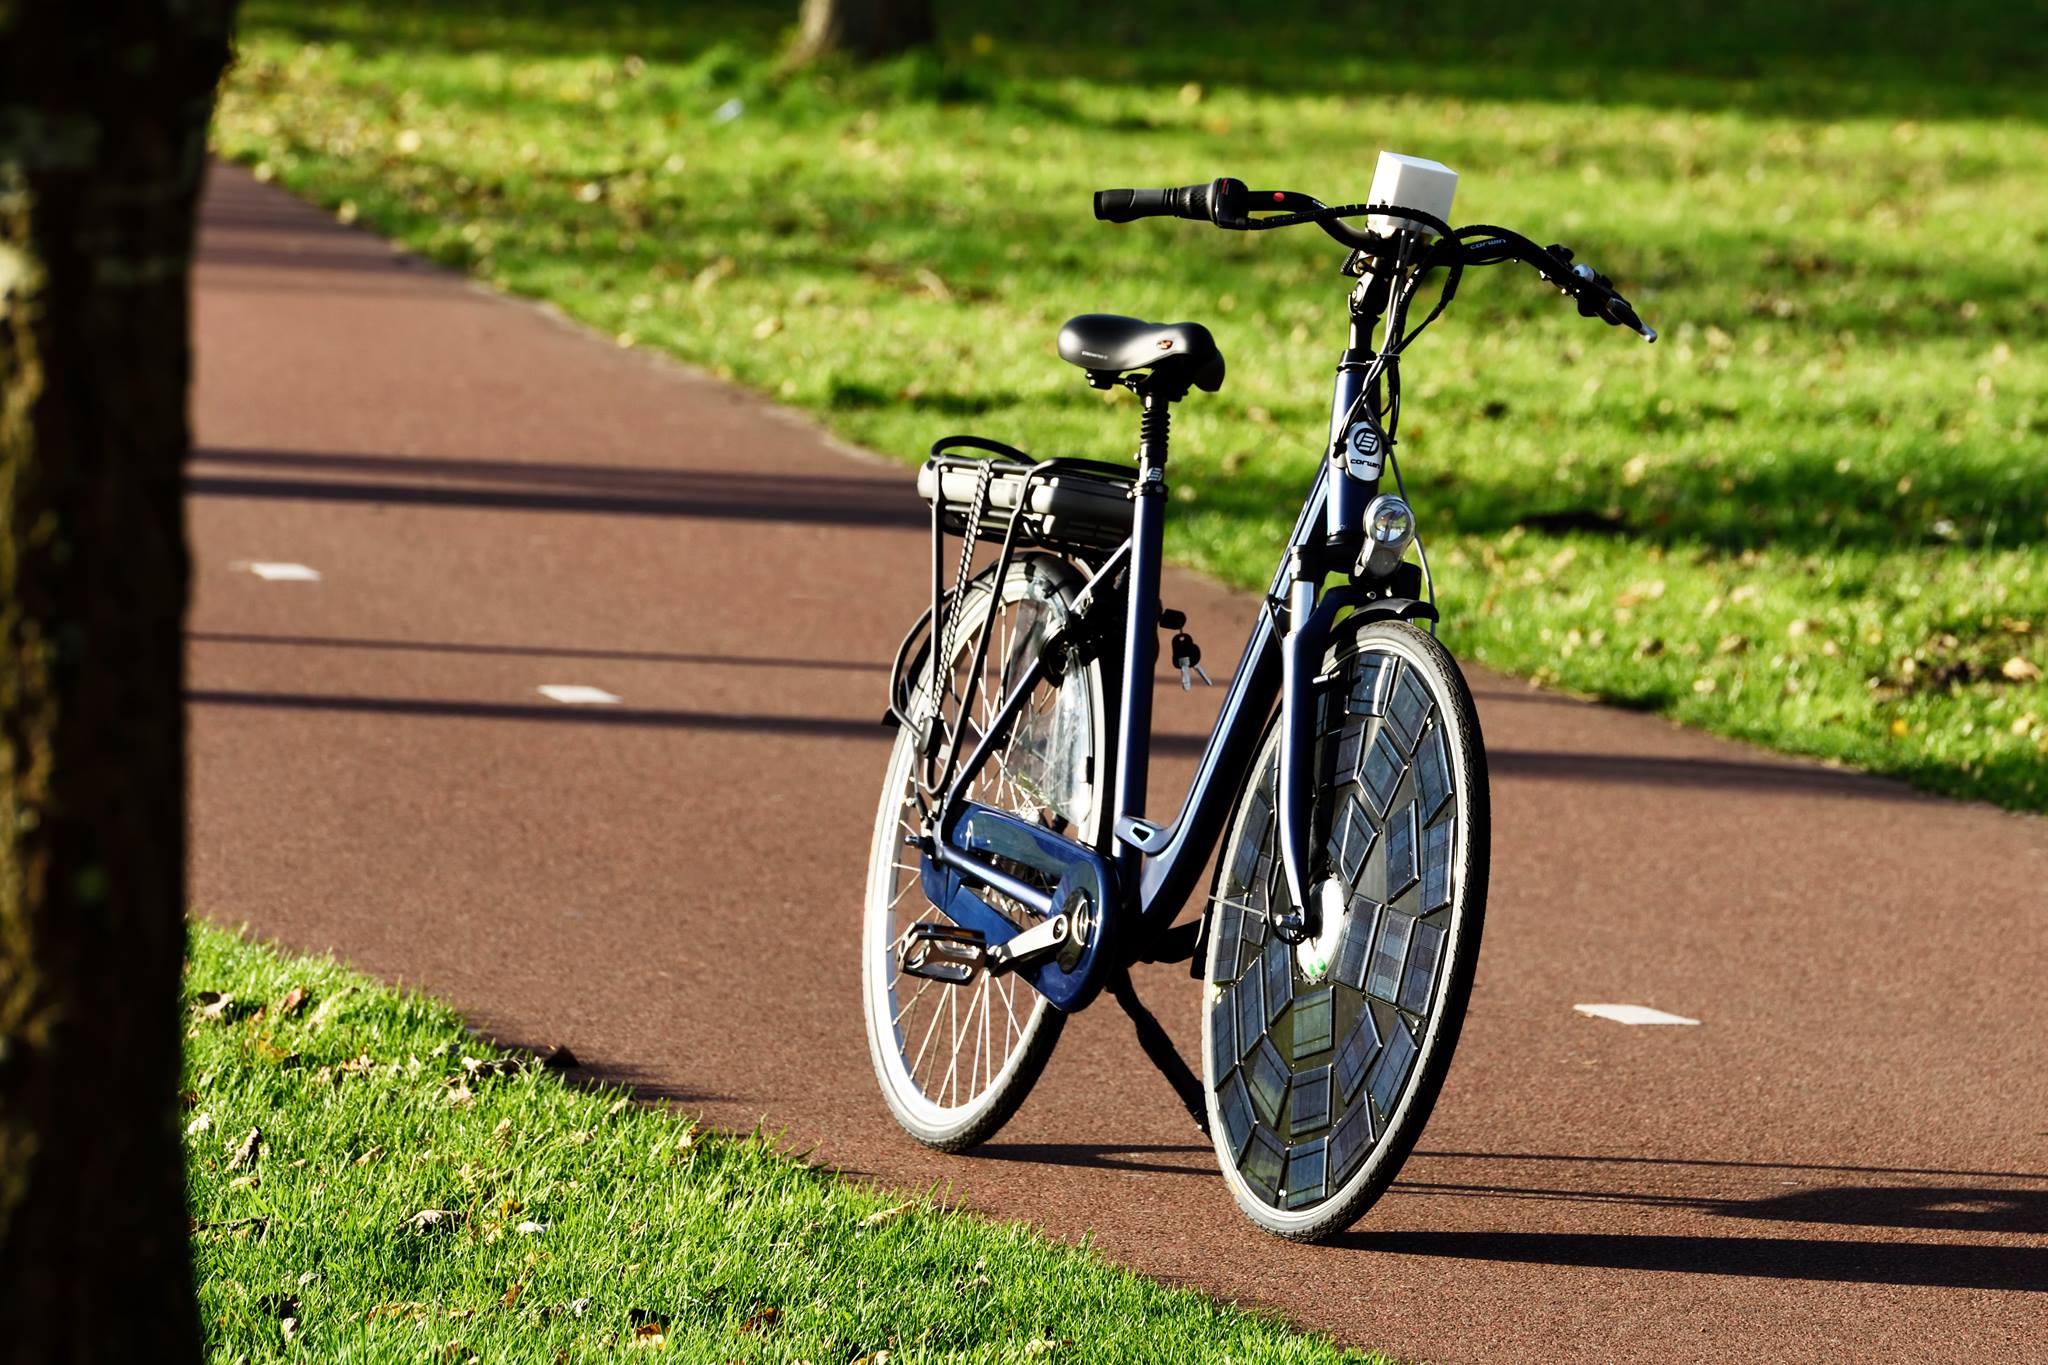 Bicicleta inovadora possui painéis solares na roda